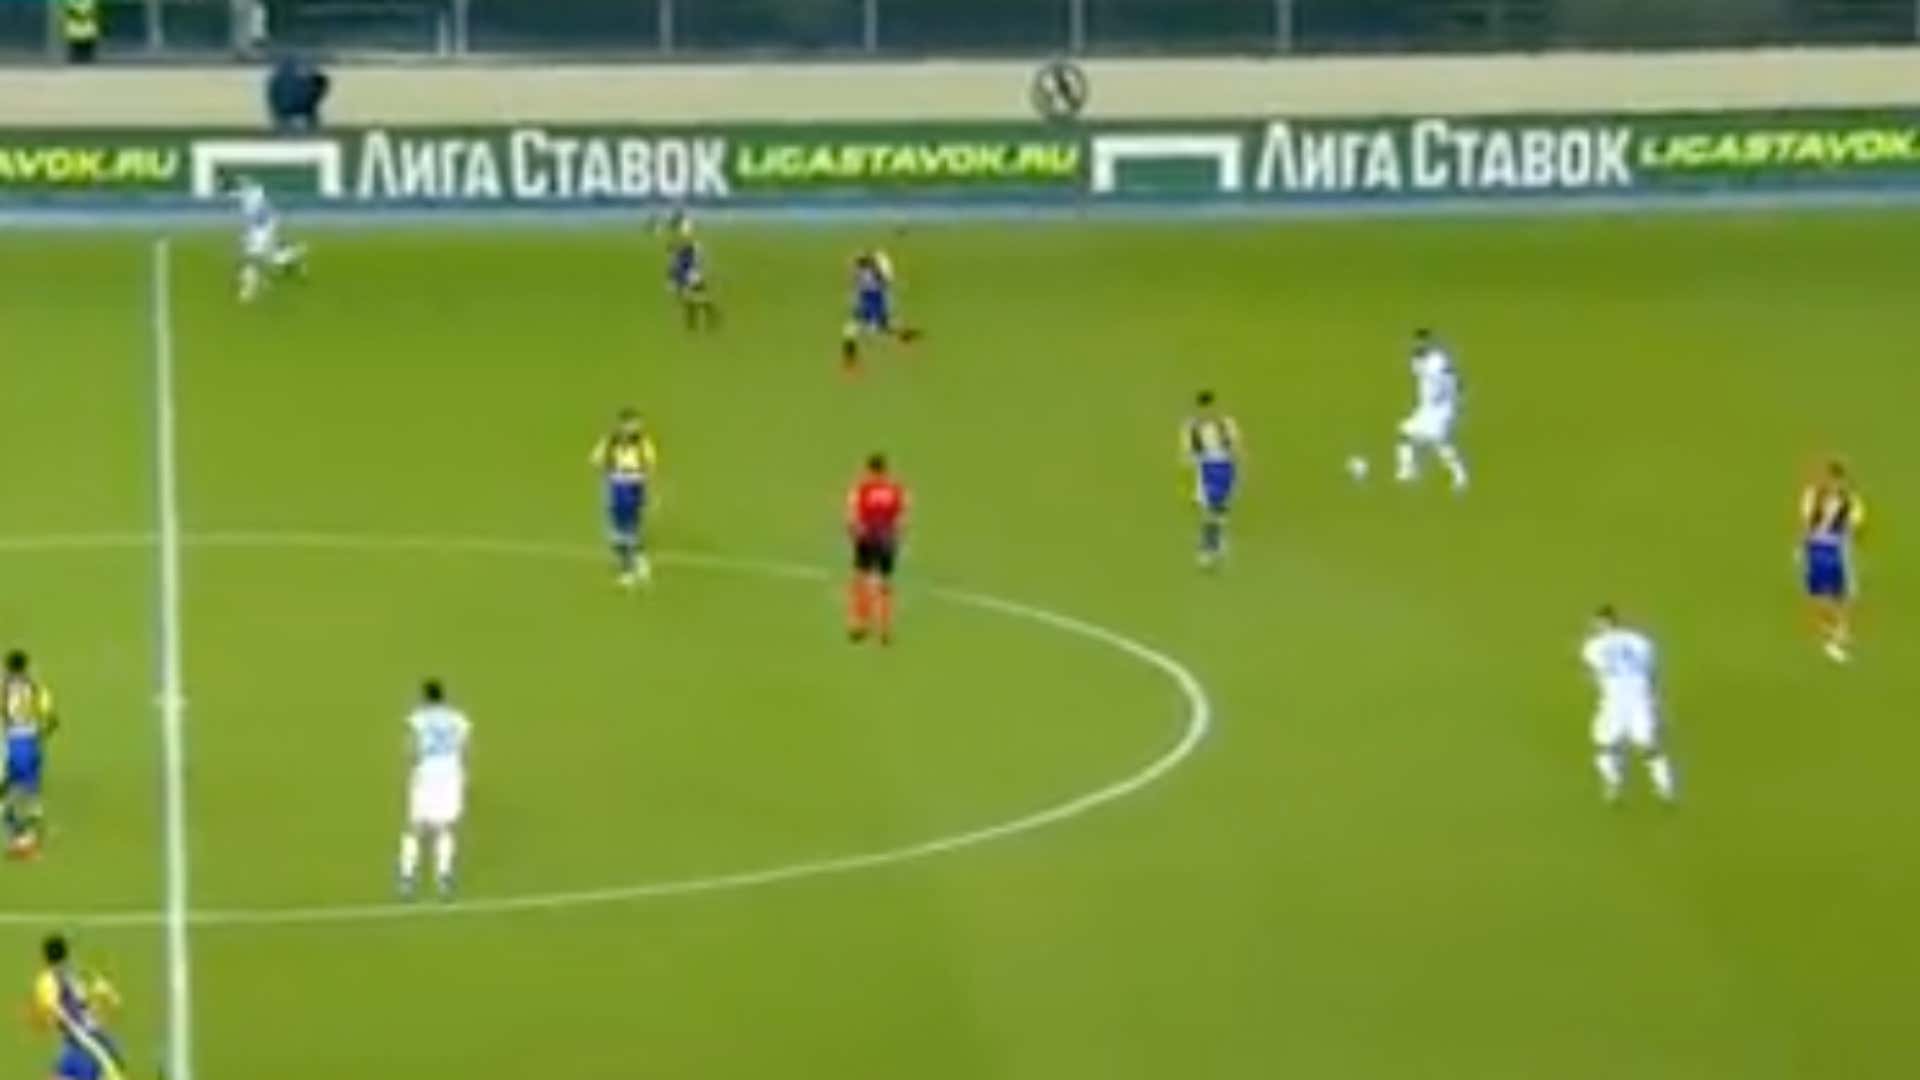 Arturo Vidal pelotazo a Darmian vs Verona